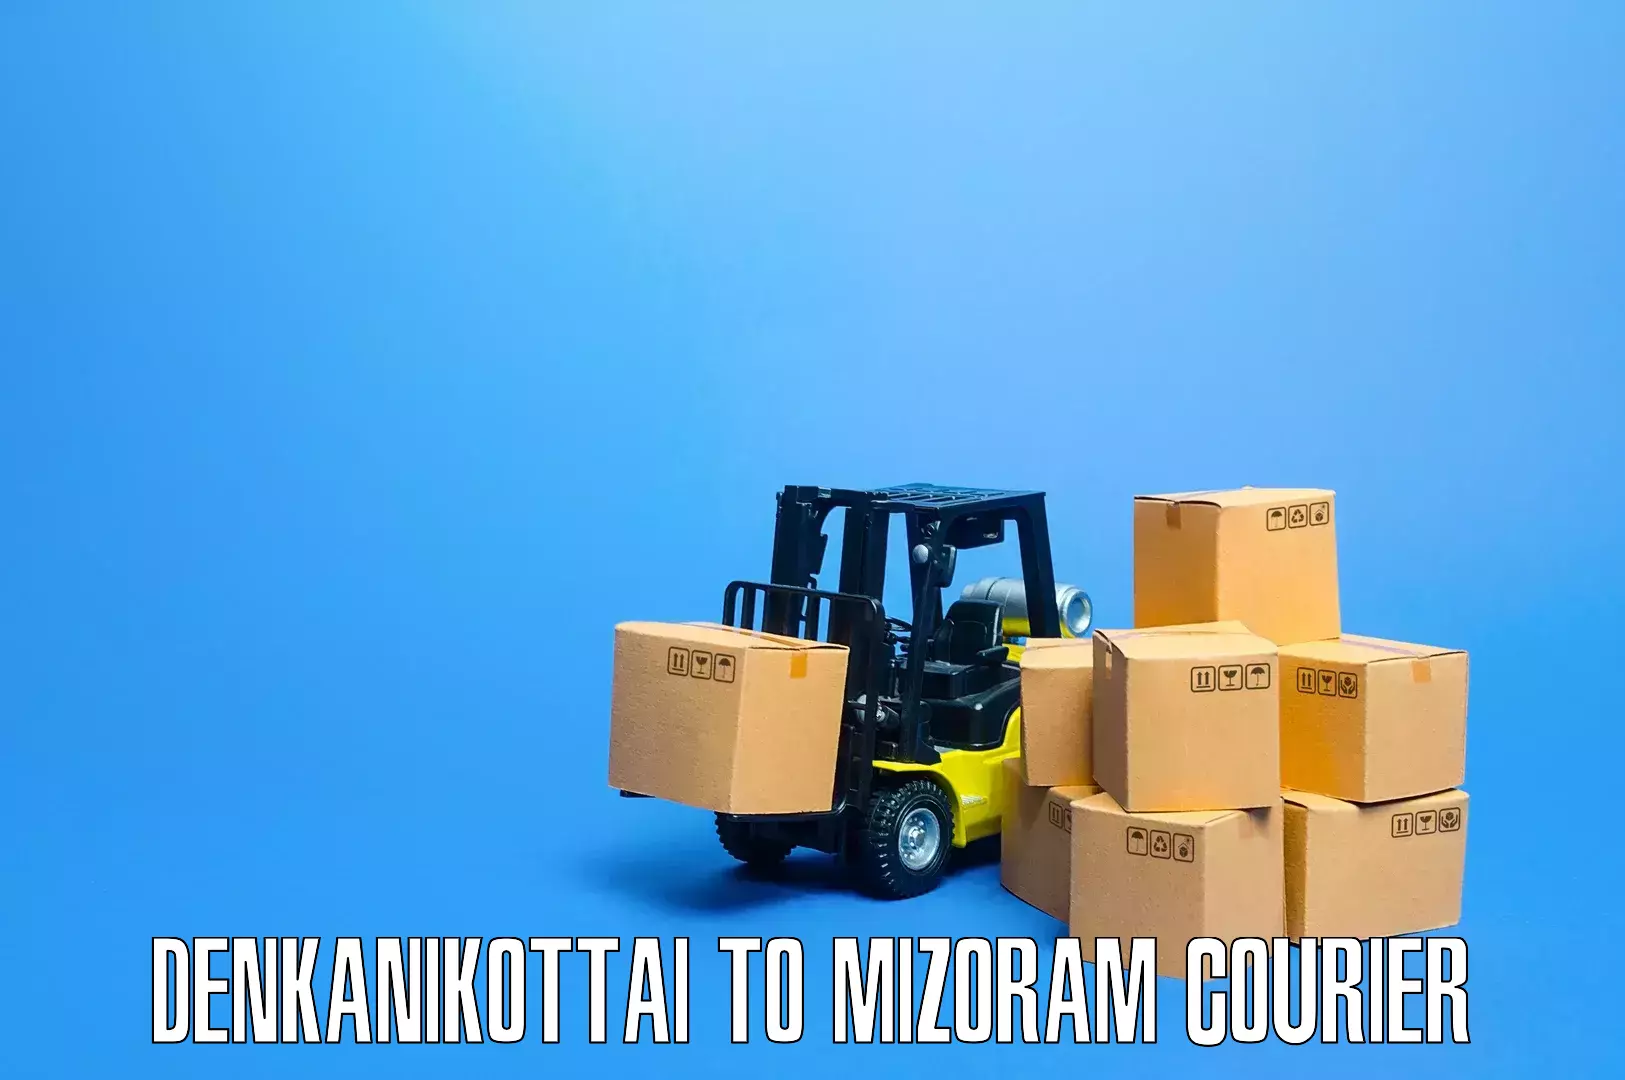 Efficient furniture relocation Denkanikottai to Hnahthial